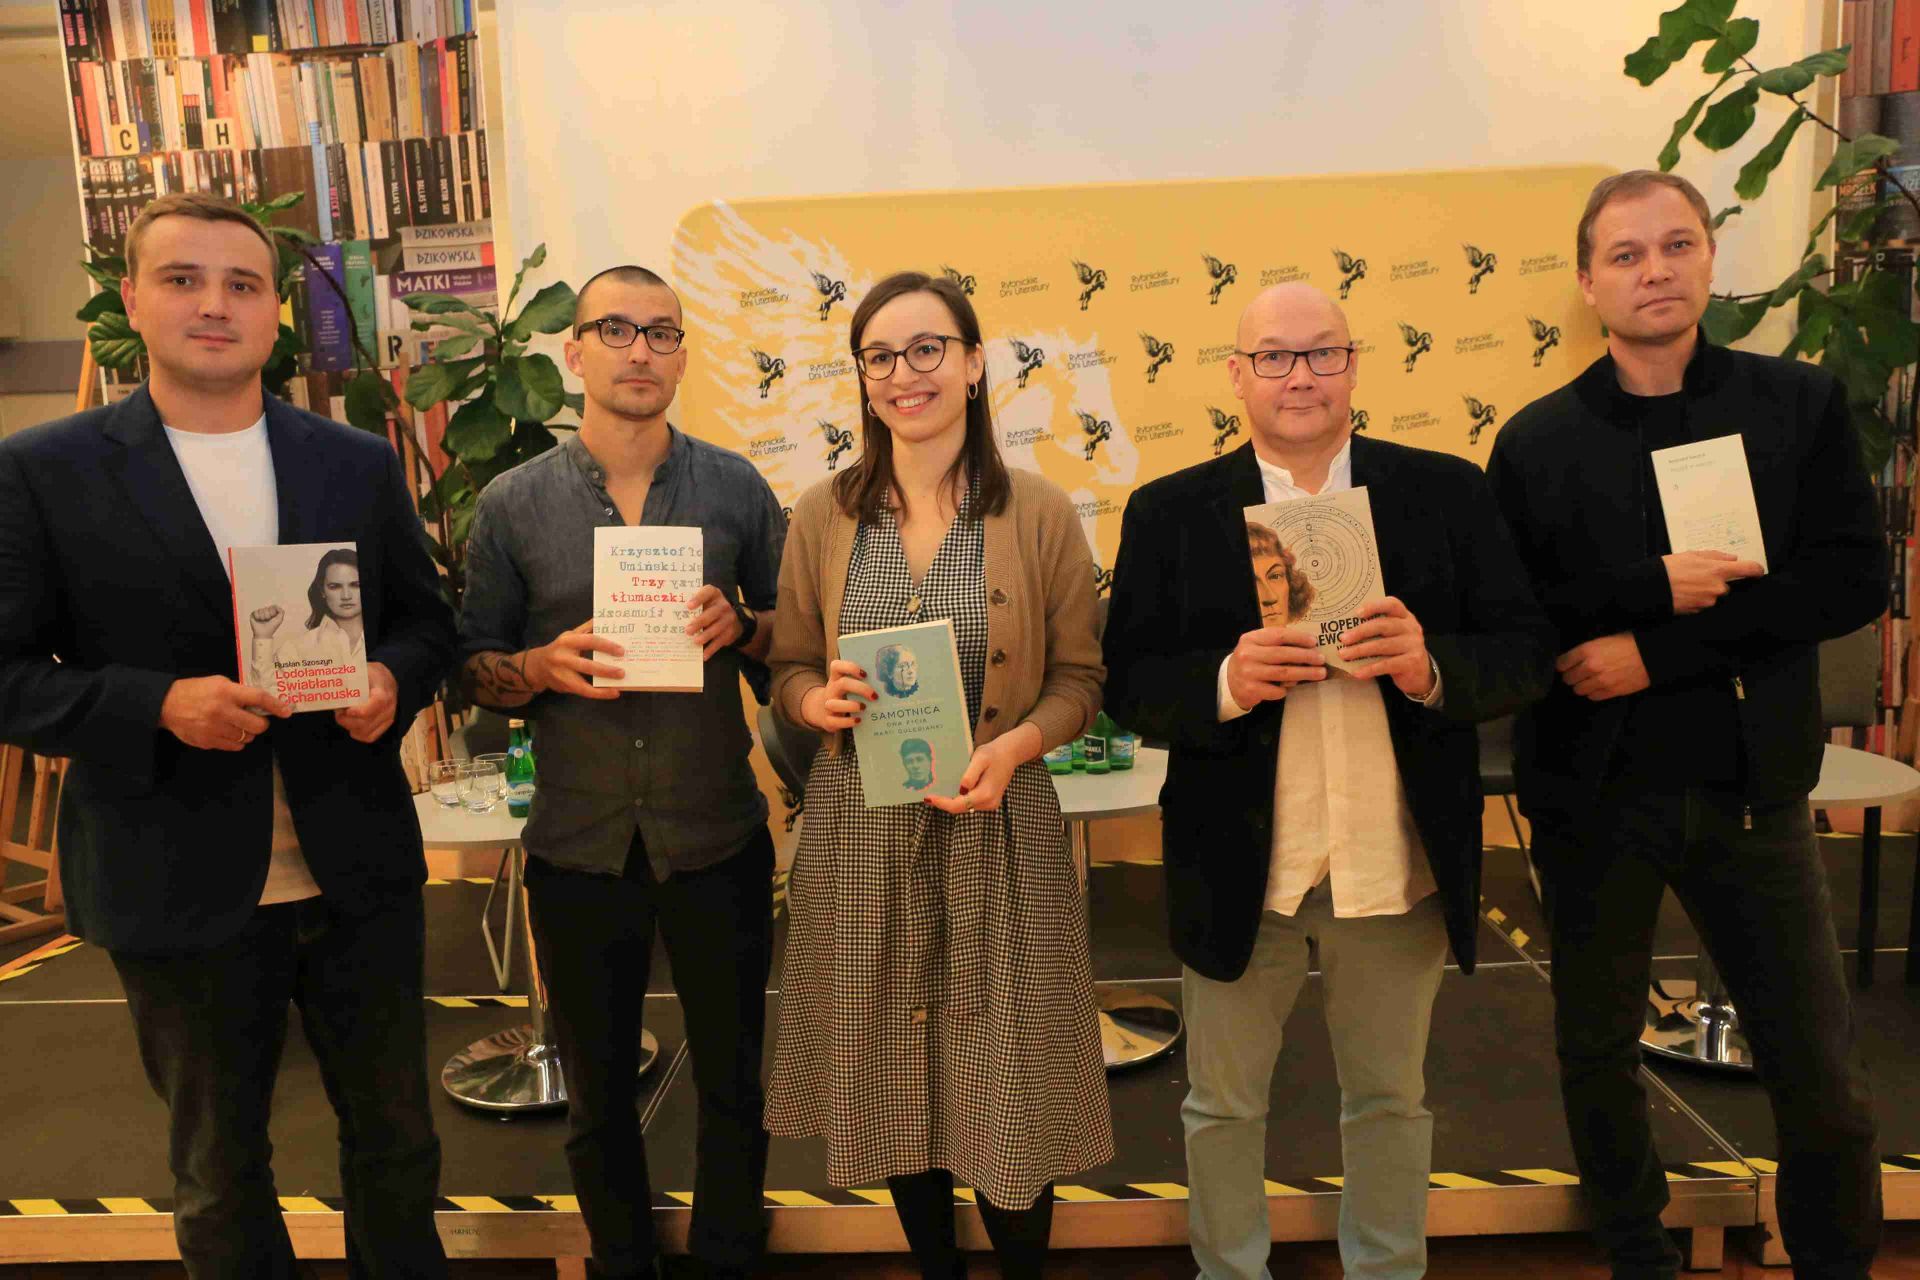 Autorzy nominowani do tegorocznej Górnośląskiej Nagrody Literackiej "Juliusz", od lewej: Rusłan Szoszyn, Krzysztof Umiński, Karolina Dzimira-Zarzycka, Wojciech Orliński i Krzysztof Siwczyk. Zdj. Wacław Troszka